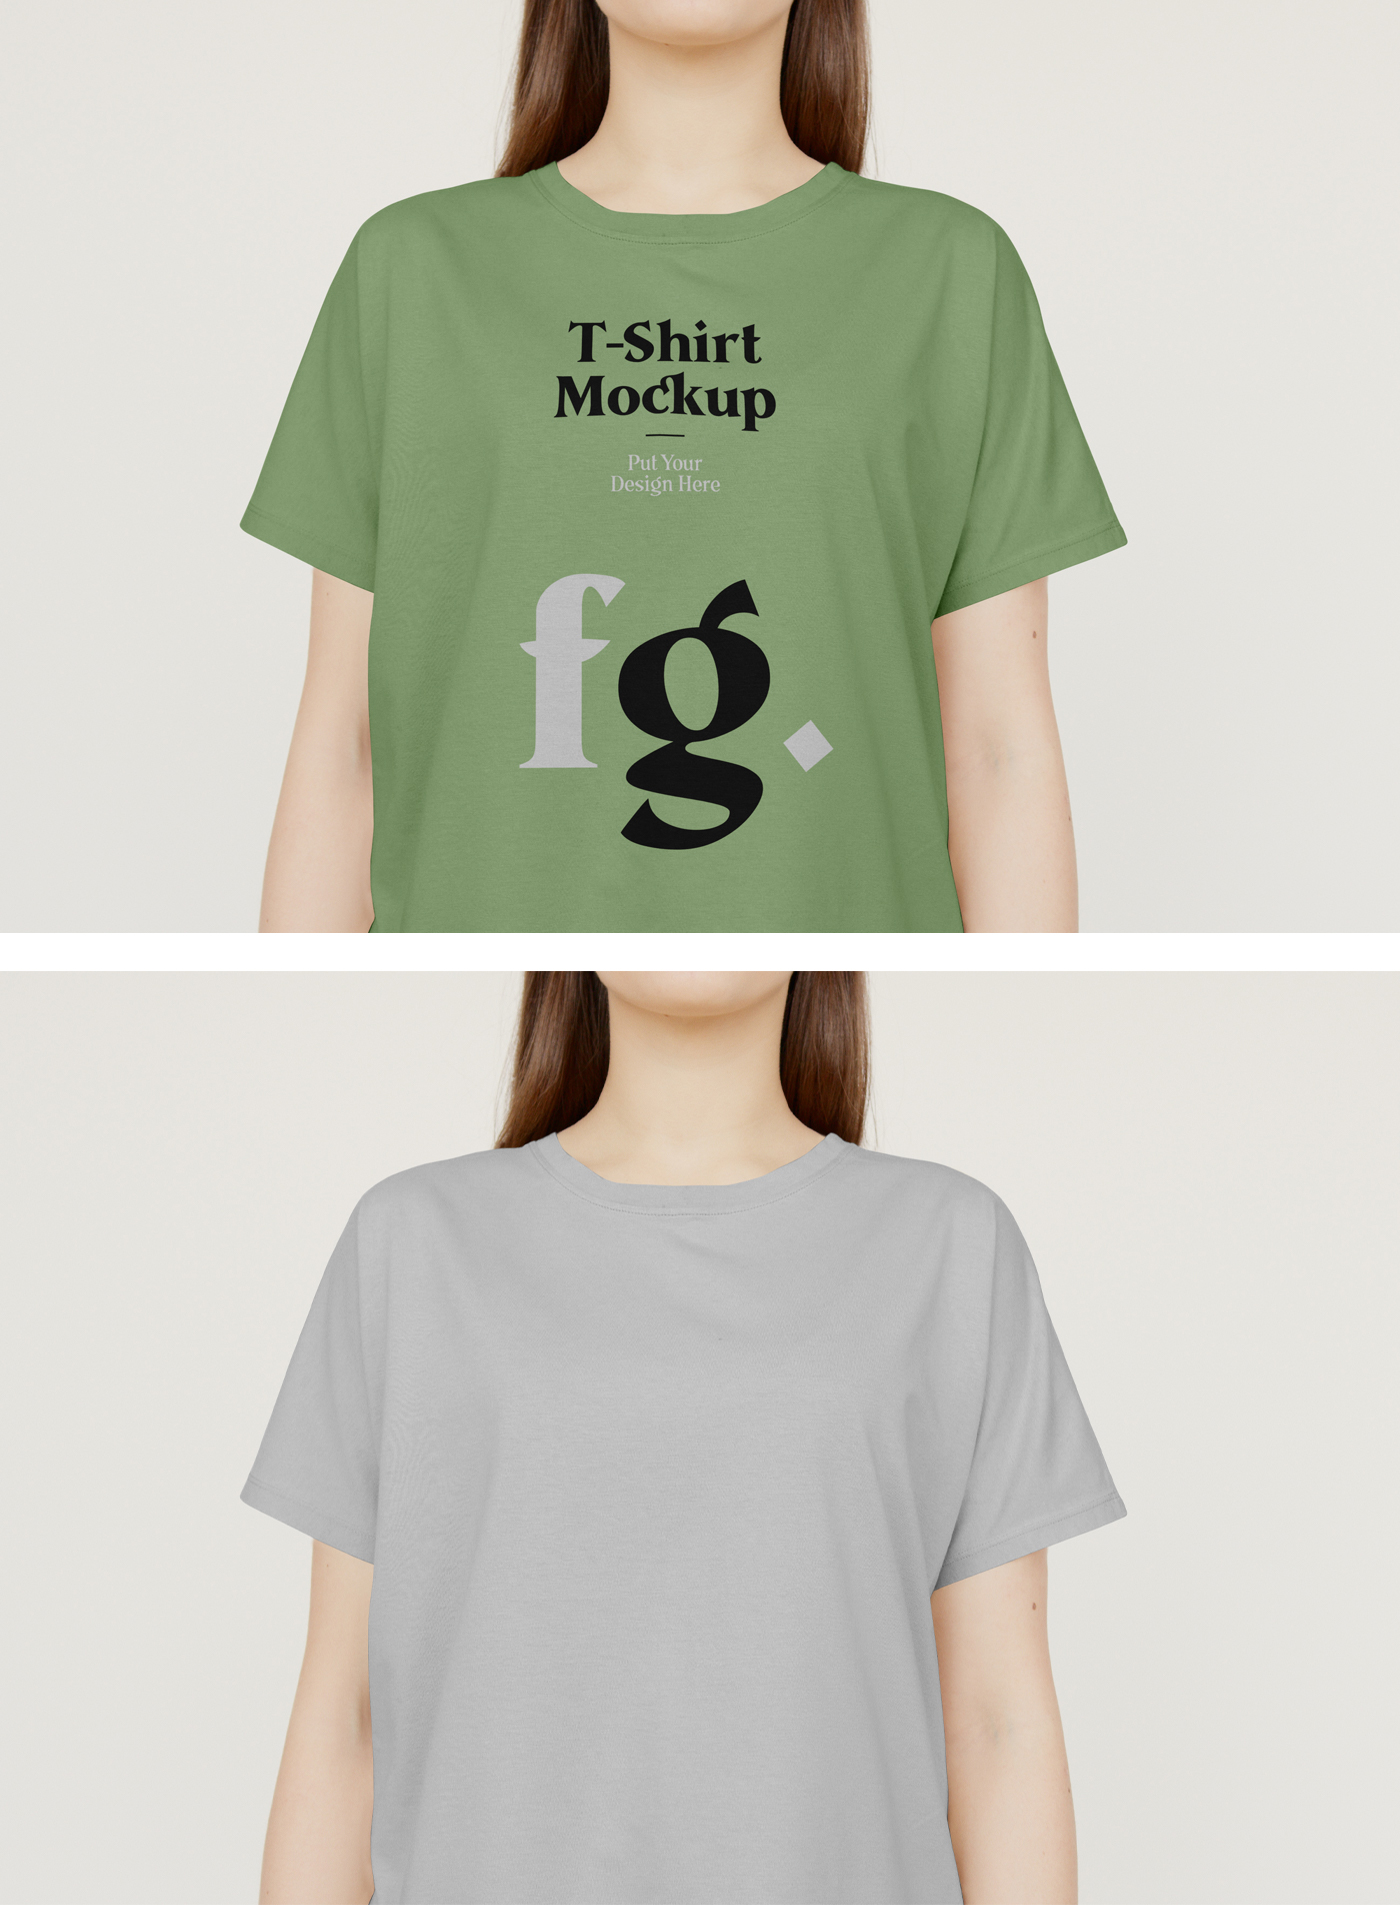 443 可商用女士T恤PSD样机素材 T-Shirt on Woman PSD Mockup Gr.zip